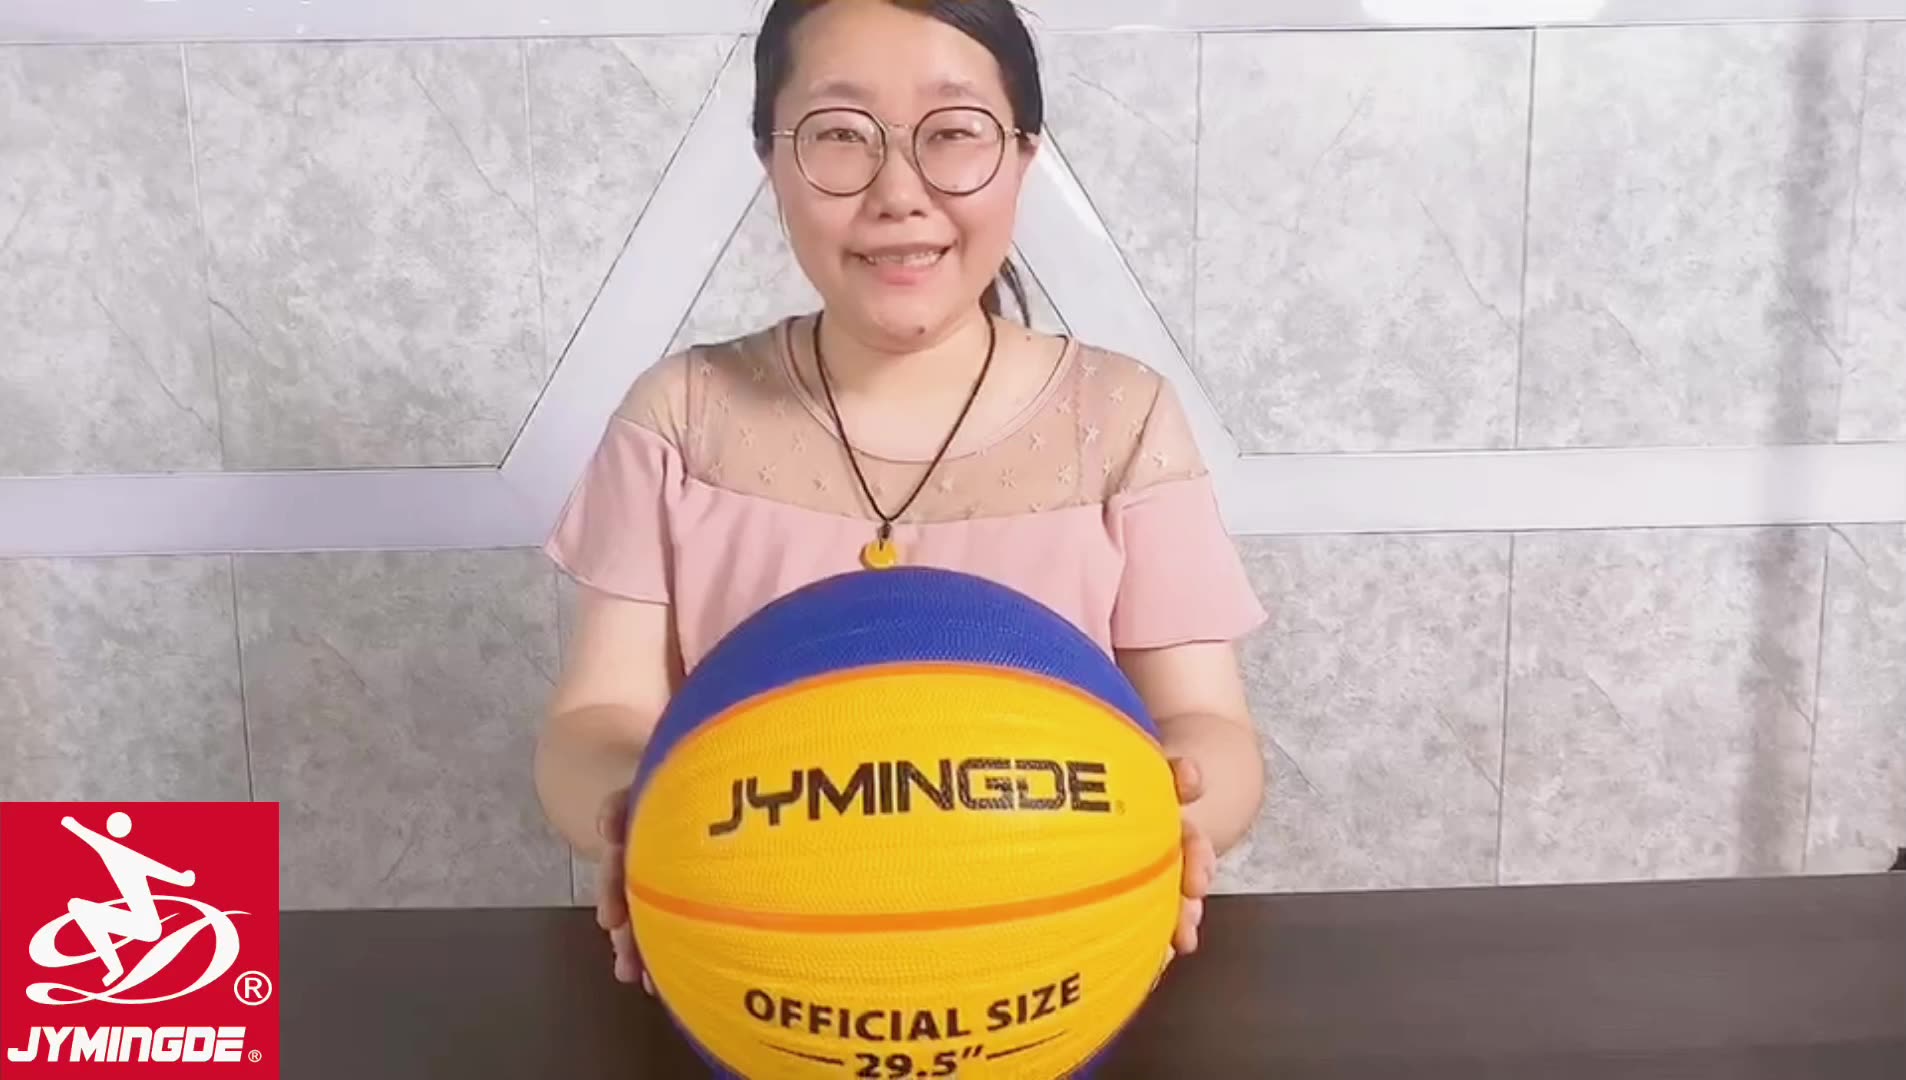 Jymingde al aire libre High Grip Balones de productos de baloncesto impreso personalizado1